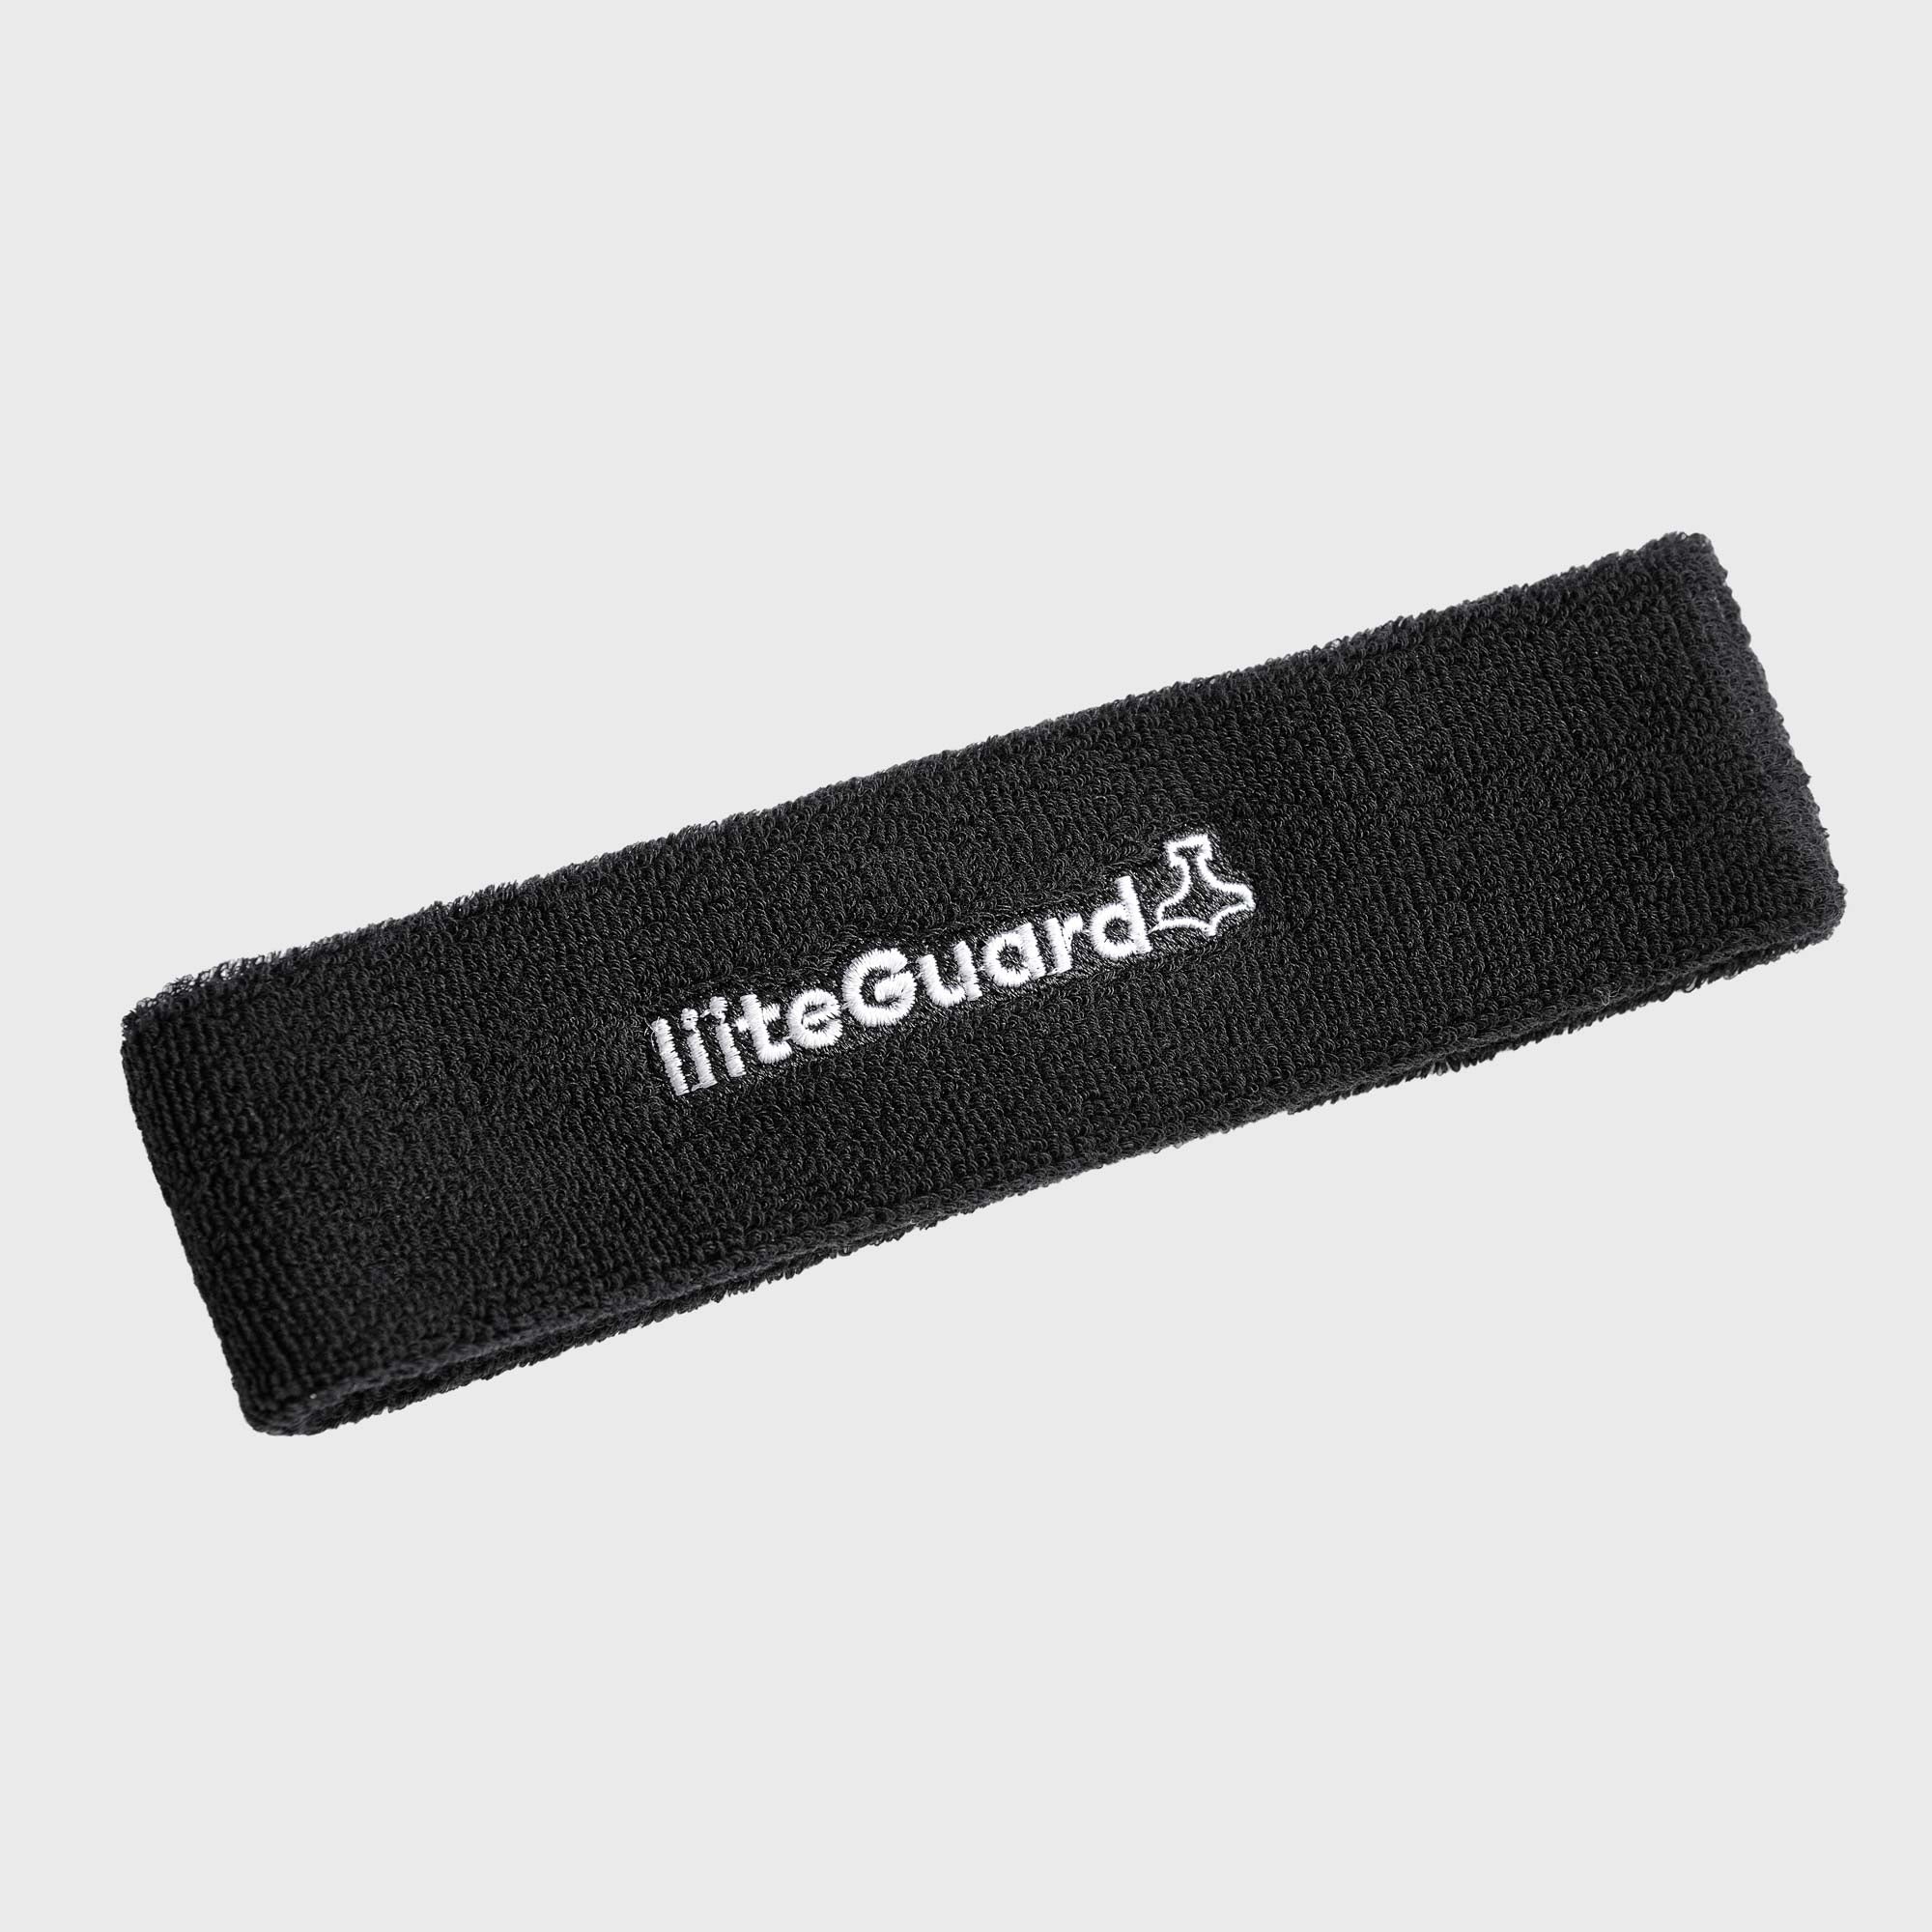 Liiteguard HEADBAND Headband BLACK